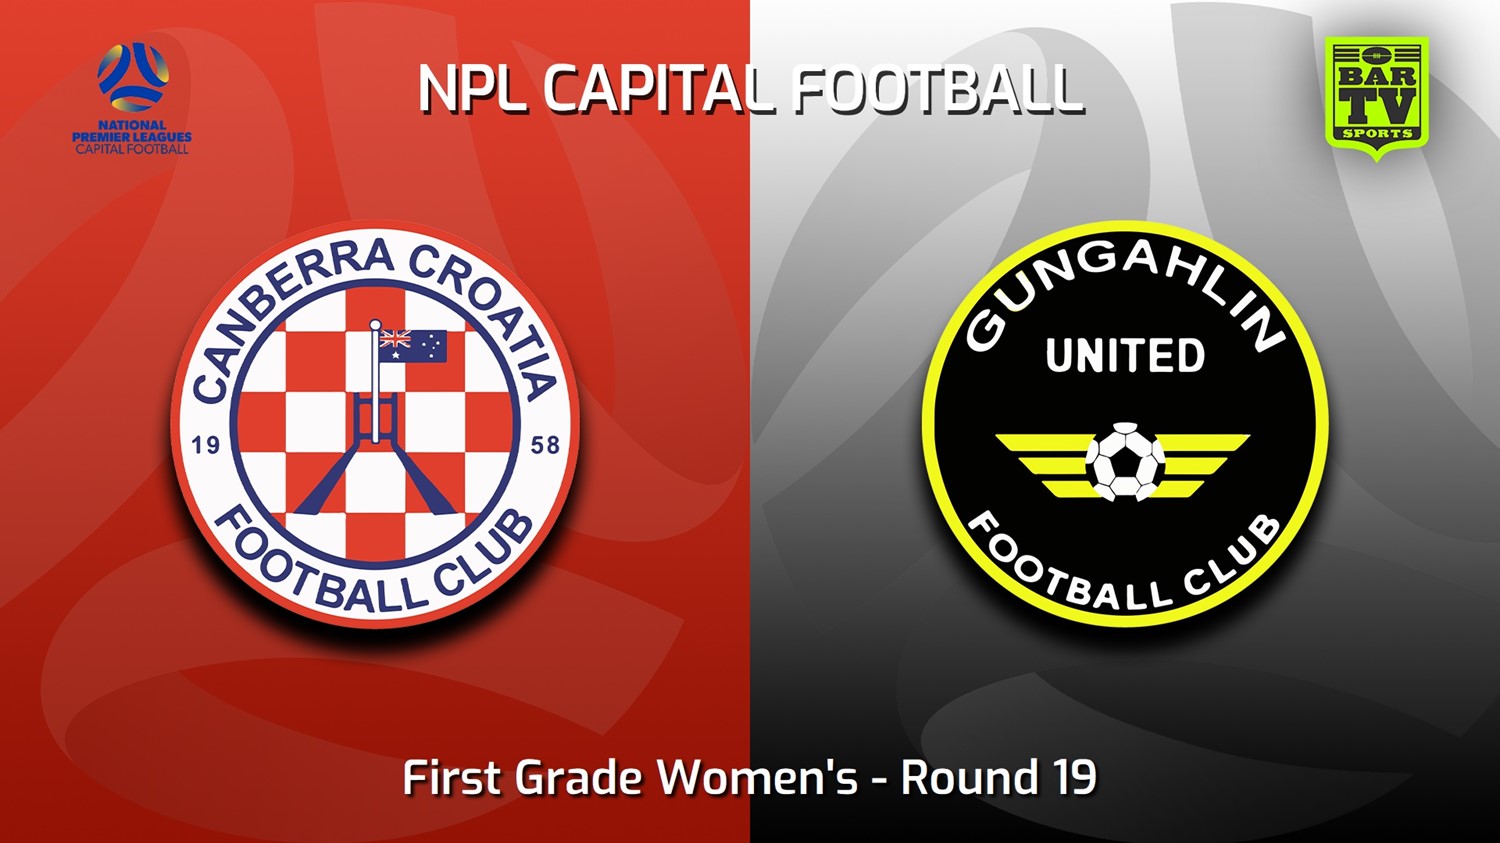 230820-Capital Womens Round 19 - Canberra Croatia FC (women) v Gungahlin United FC (women) Minigame Slate Image